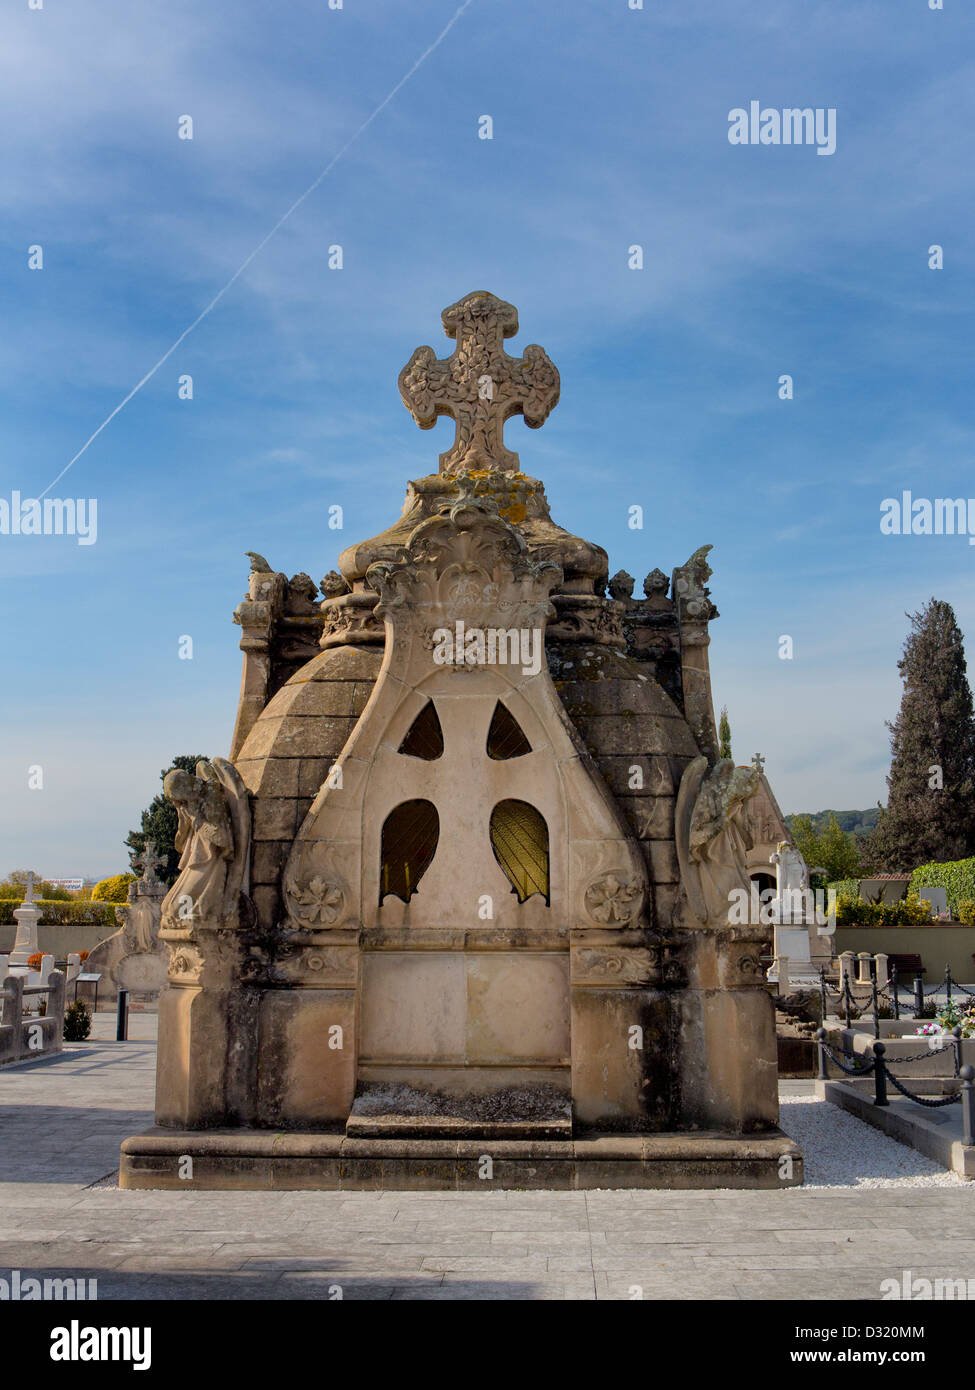 Blick auf dem Friedhof in Lloret de Mar. Eines der bedeutendsten Beispiele der katalanischen Grabkunst der modernistische Ära. Stockfoto